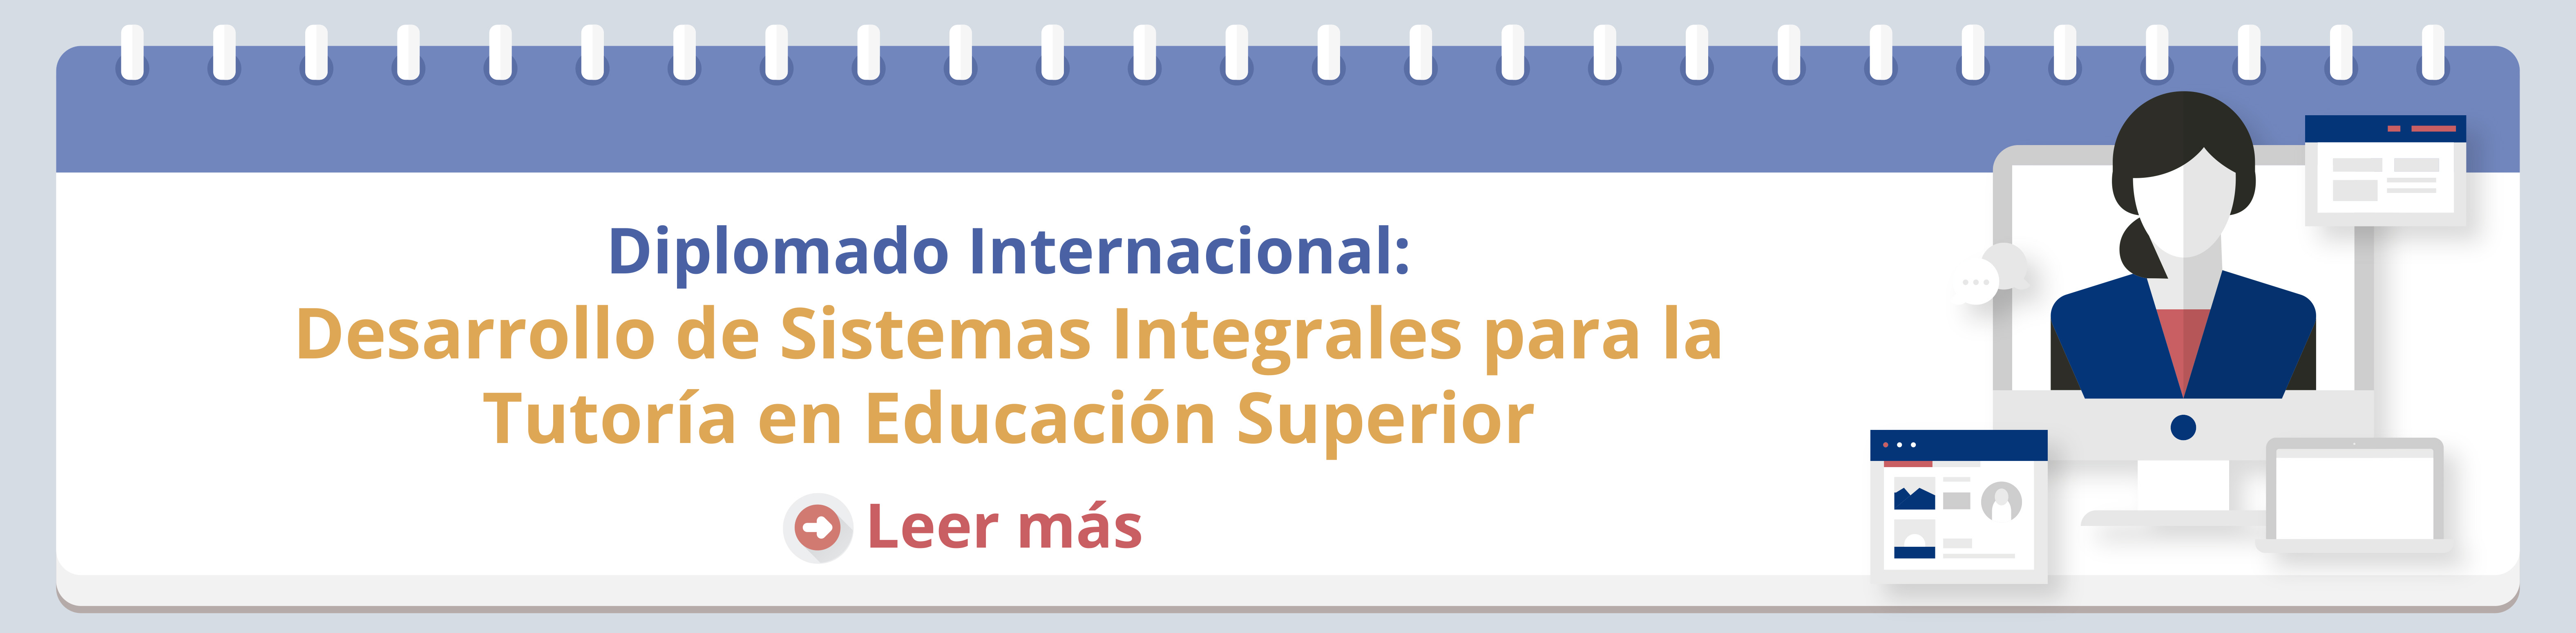 diplomado_internacional_tutorias_esducacion_superior.jpg